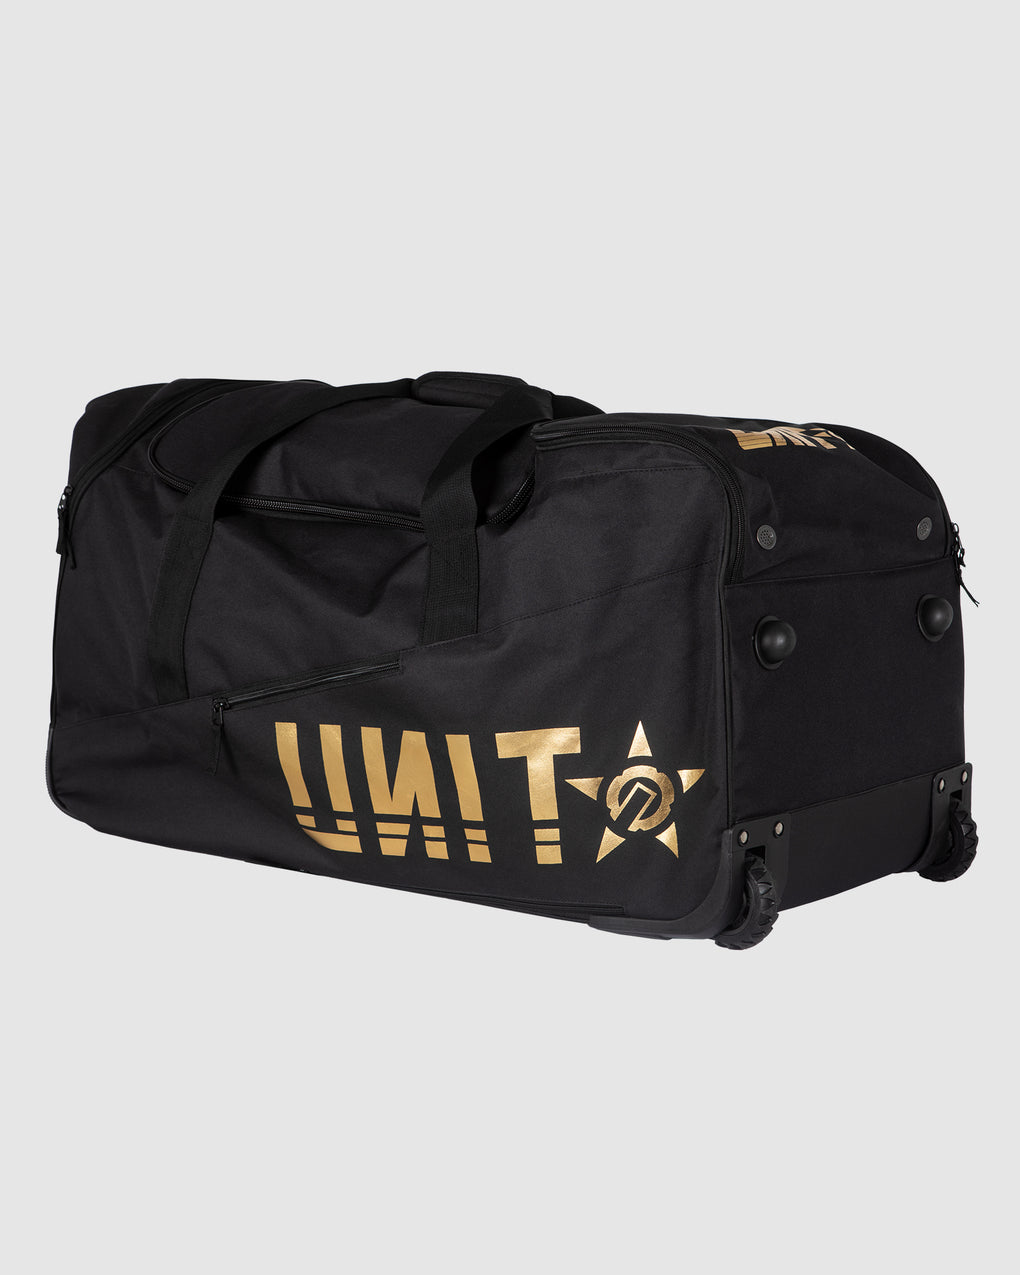 UNIT Departure Gear Bag